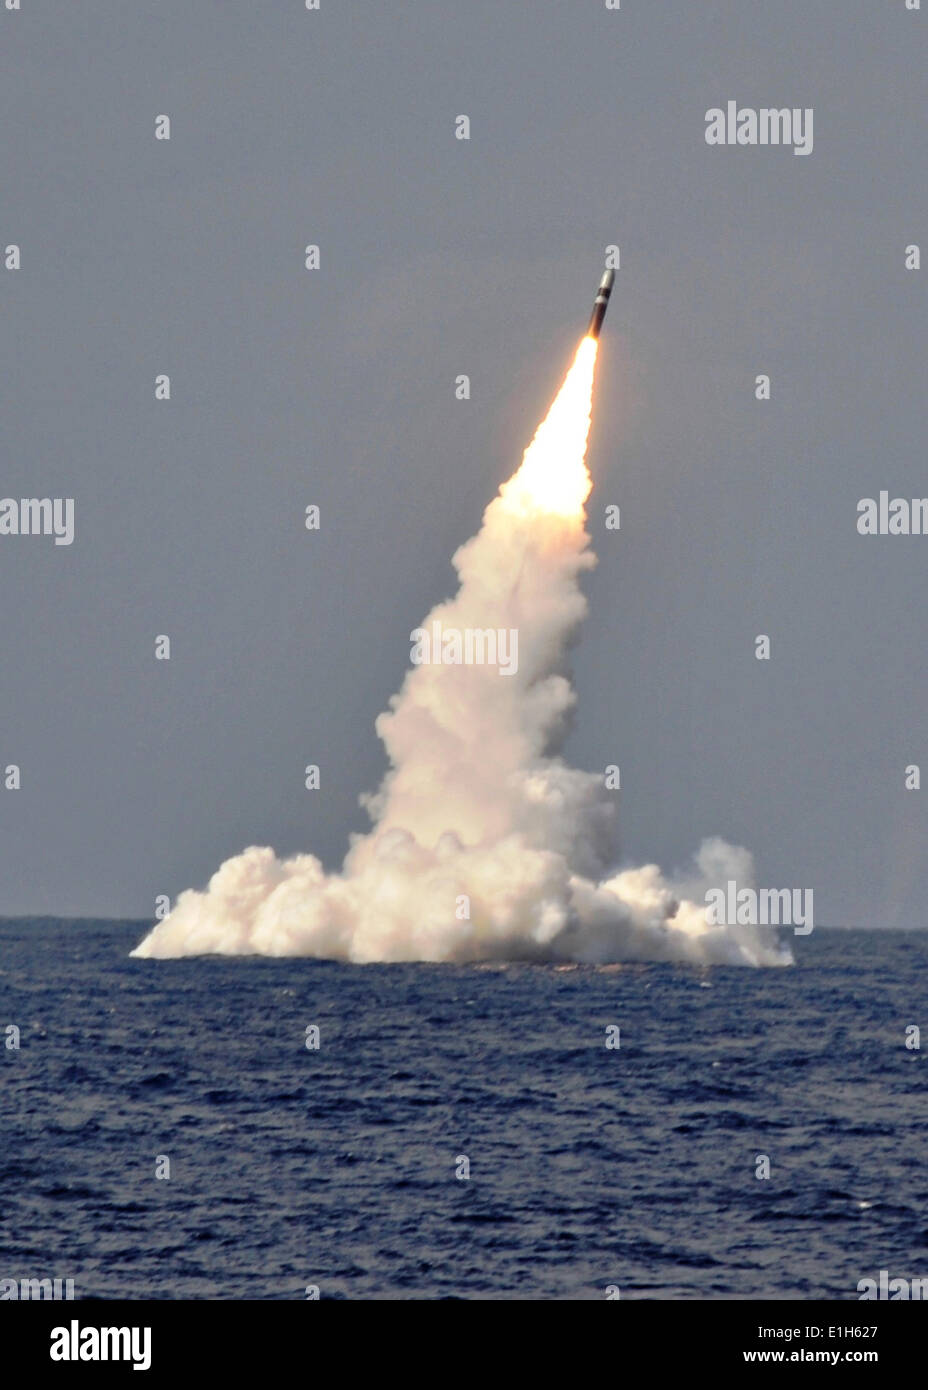 Ein US-Marine Trident II D-5 ballistische Flugkörper ist Ozean von ballistischen Raketen Ohio-Klasse-u-Boot USS West Virginia während ein Raketentest 2. Juni 2014 in den Atlantik Missile Range gestartet. Stockfoto